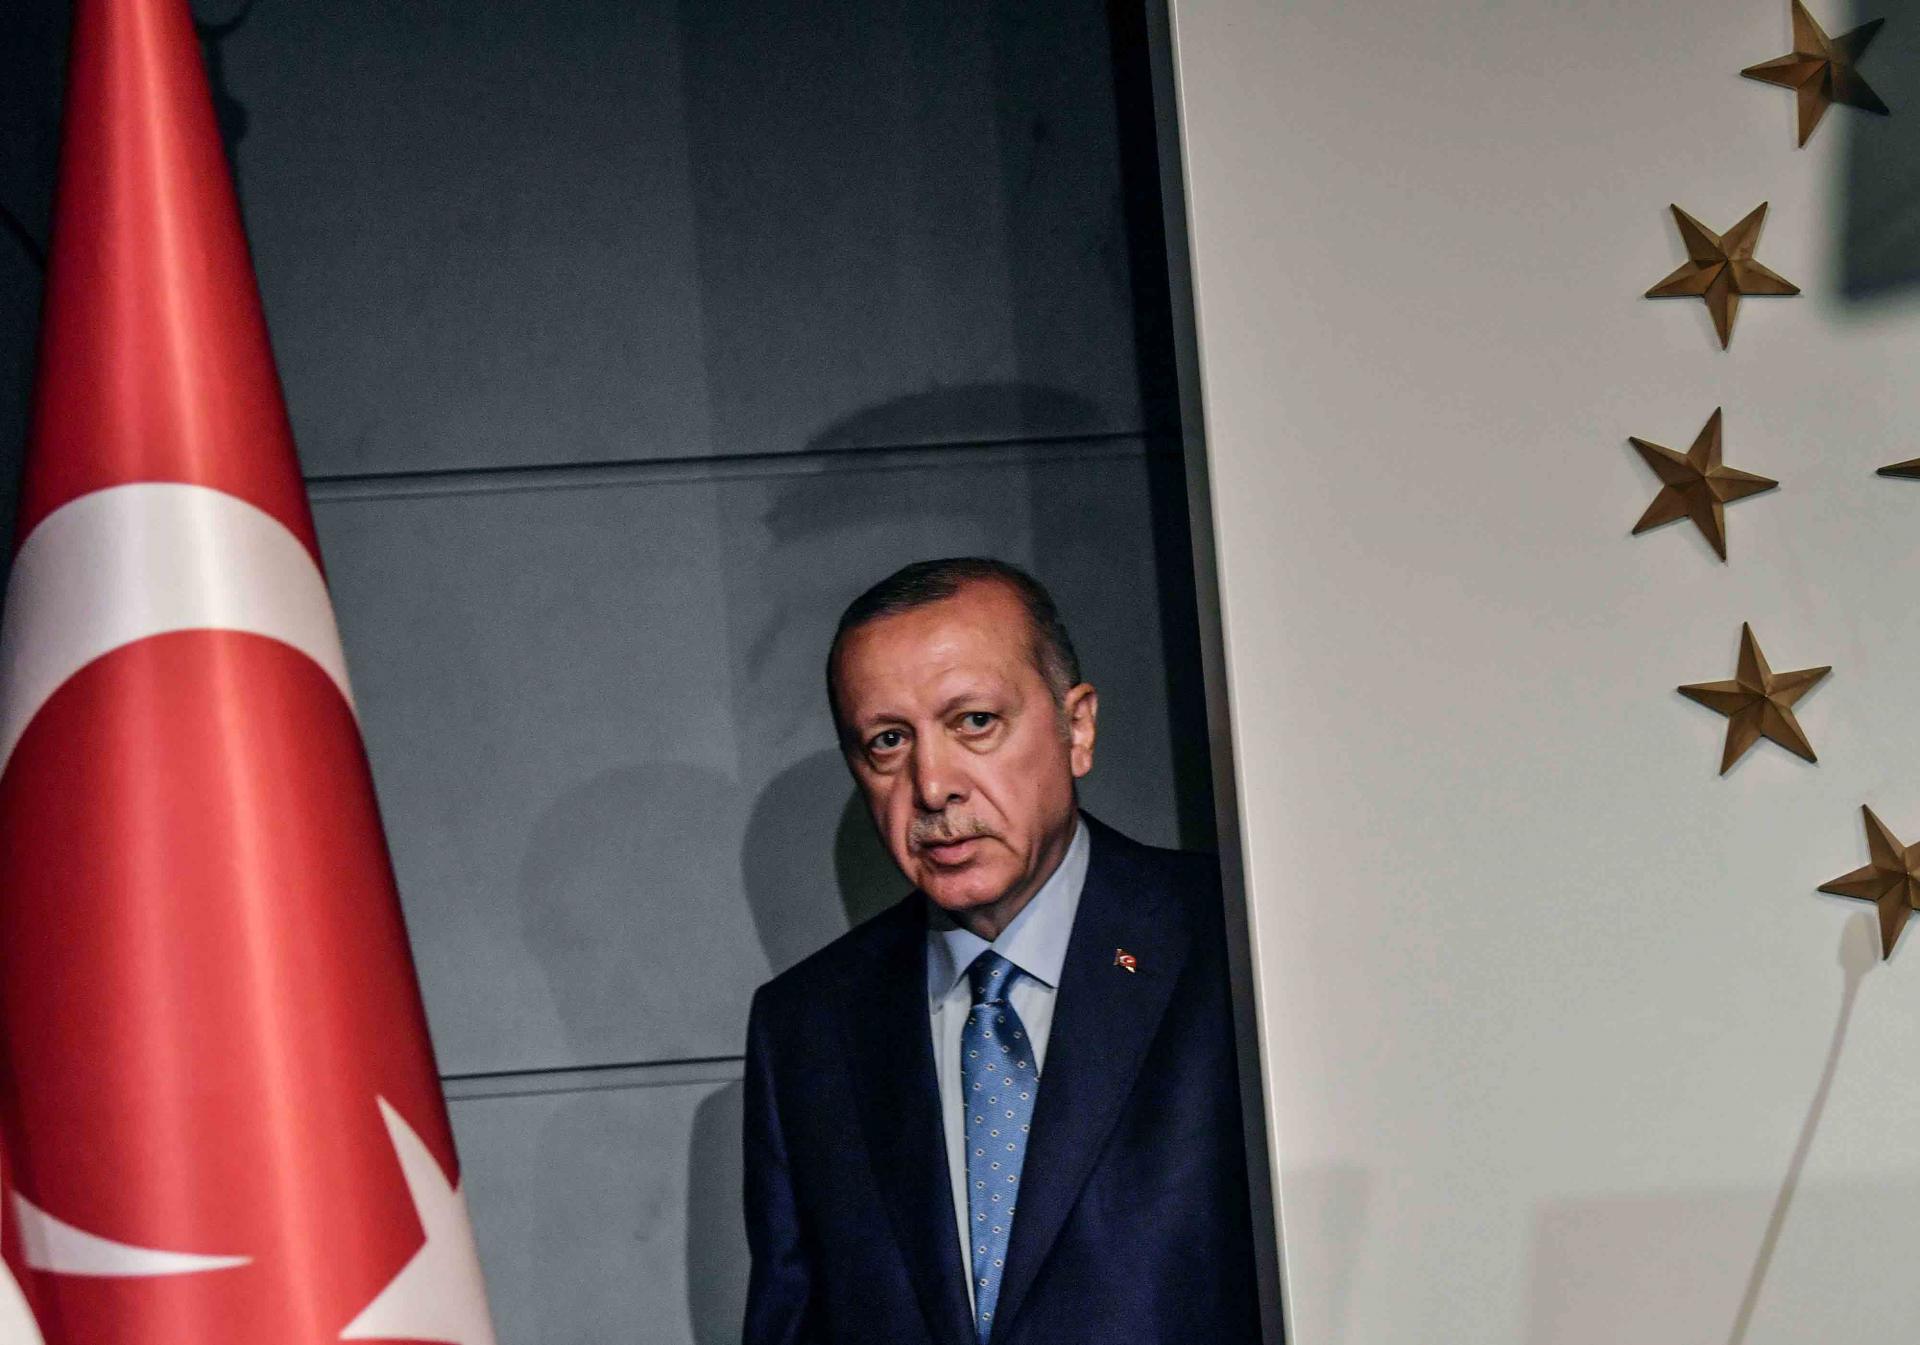 اردوغان يتحكم بمفرده في هياكل الدولة